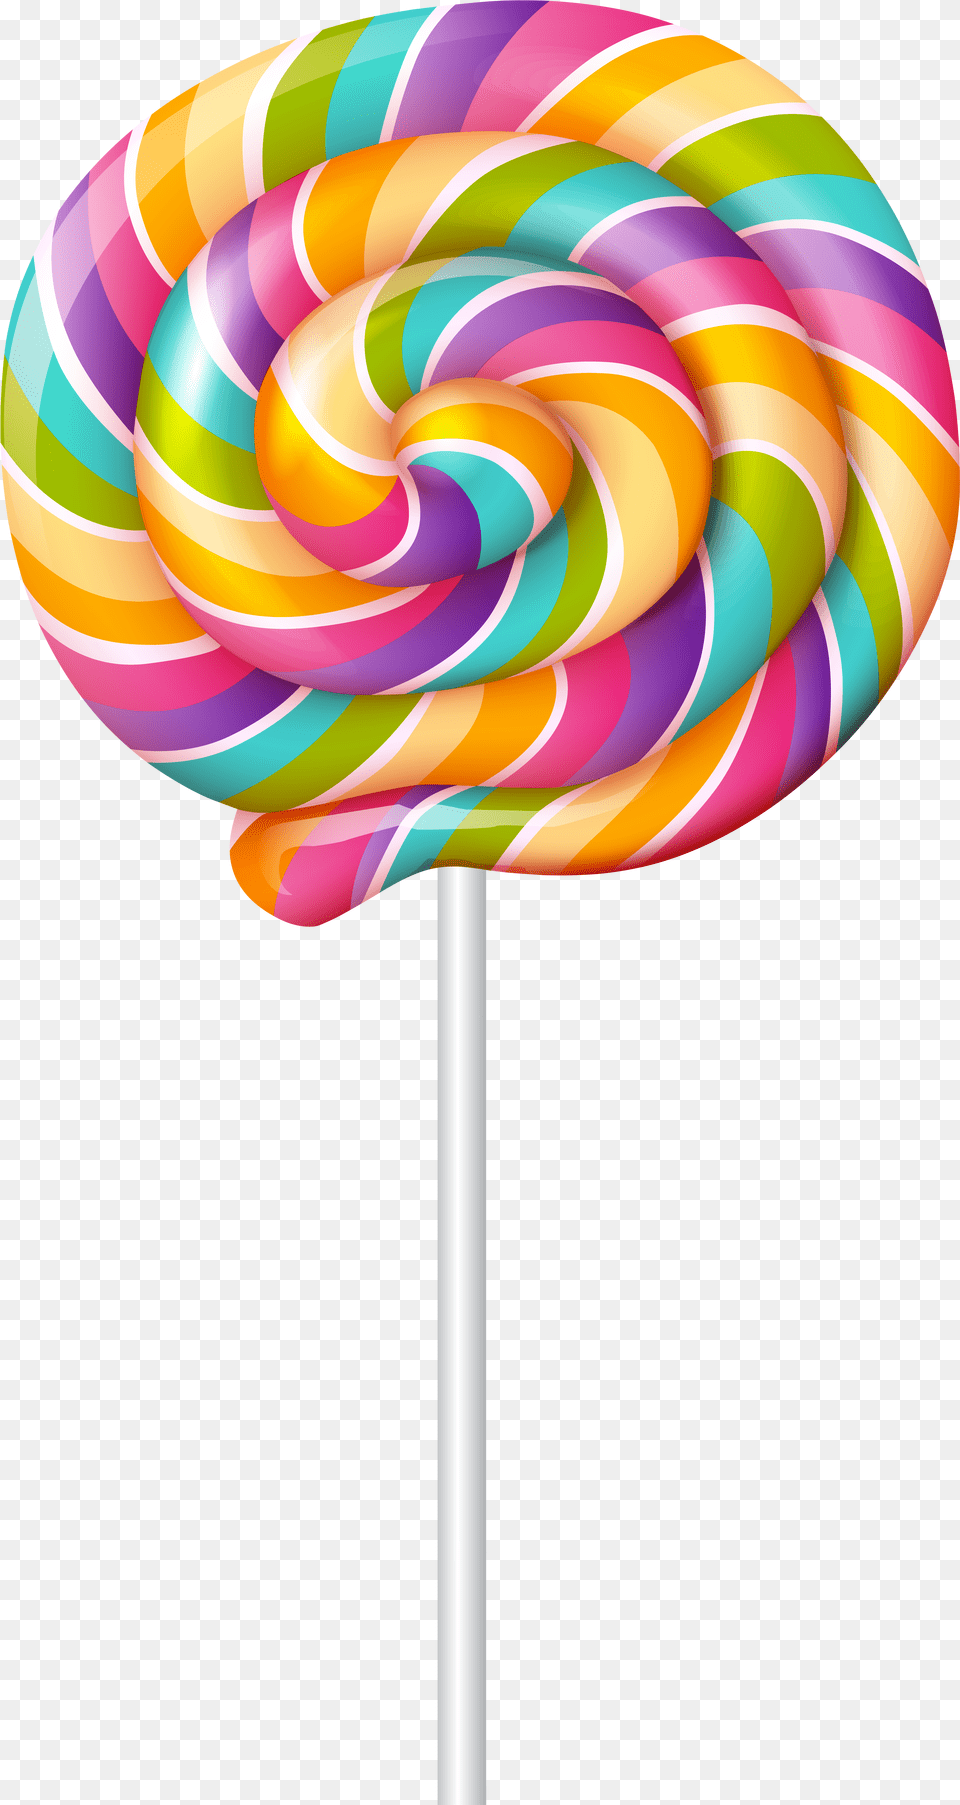 Swirl Gallery Yopriceville Swirl Lollipop Free Png Download